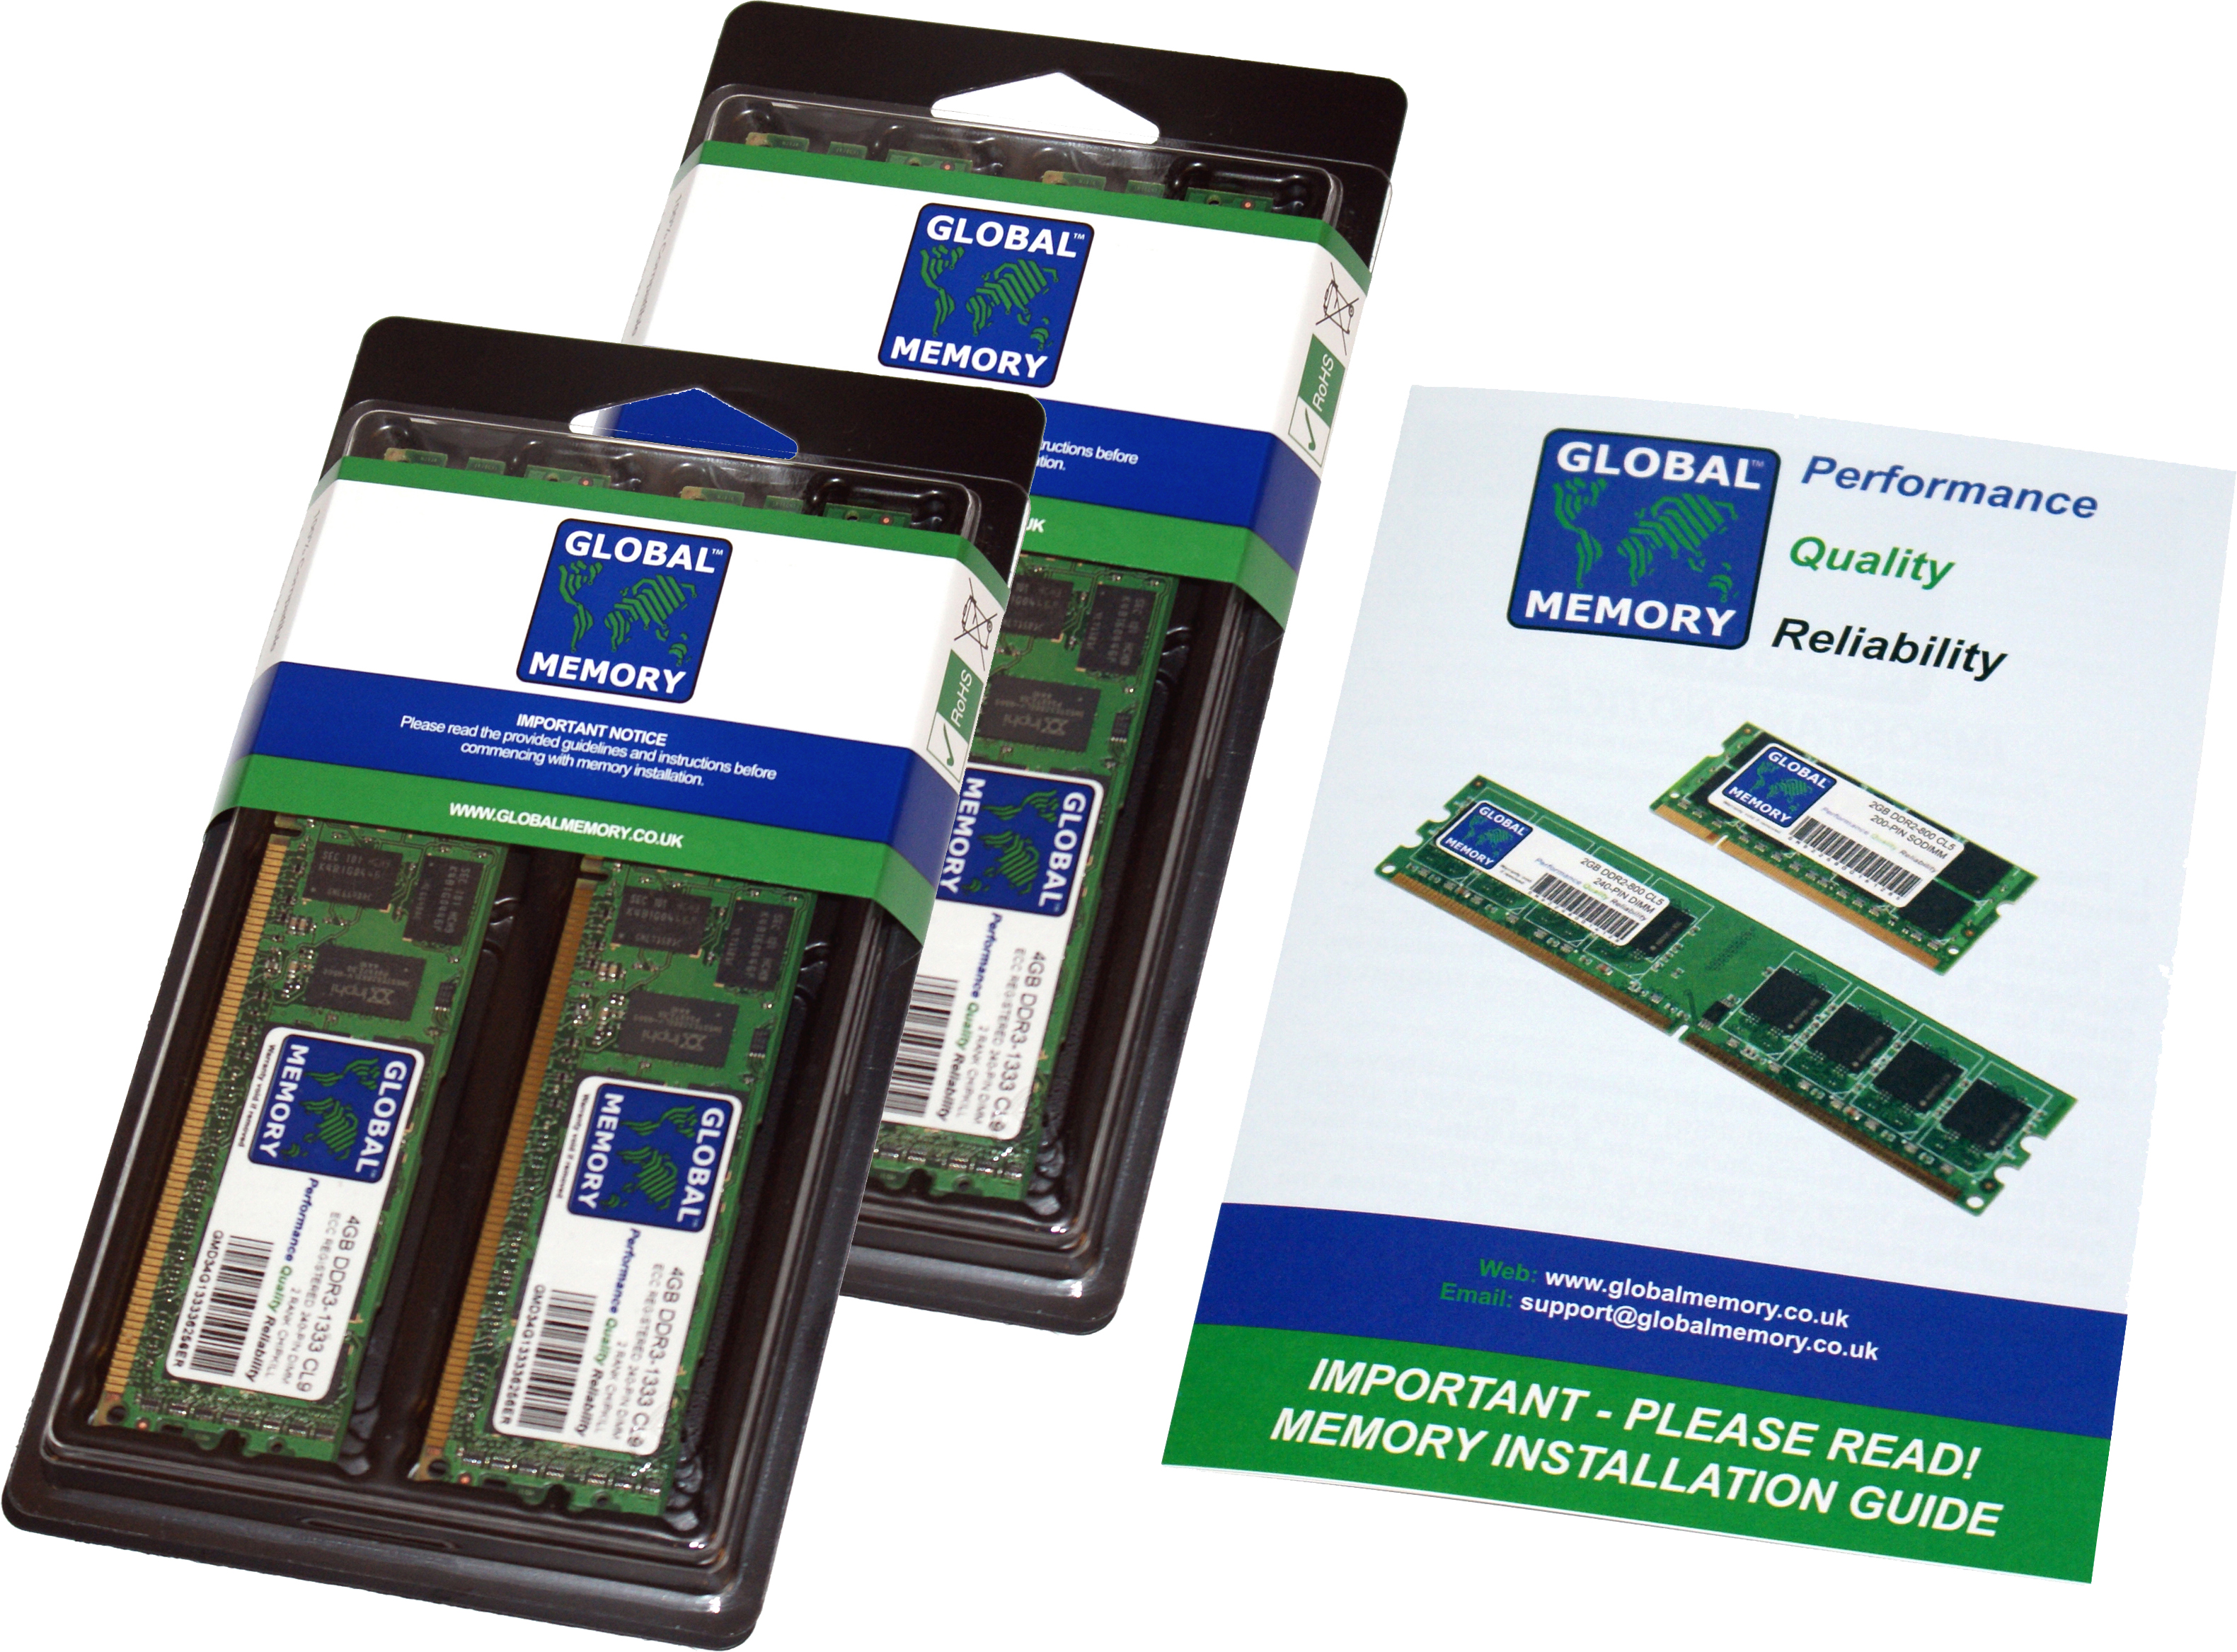 128GB (4 x 32GB) DDR4 2666MHz PC4-21300 288-PIN ECC REGISTERED DIMM (RDIMM) MEMORY RAM KIT FOR HEWLETT-PACKARD SERVERS/WORKSTATIONS (8 RANK KIT CHIPKILL)